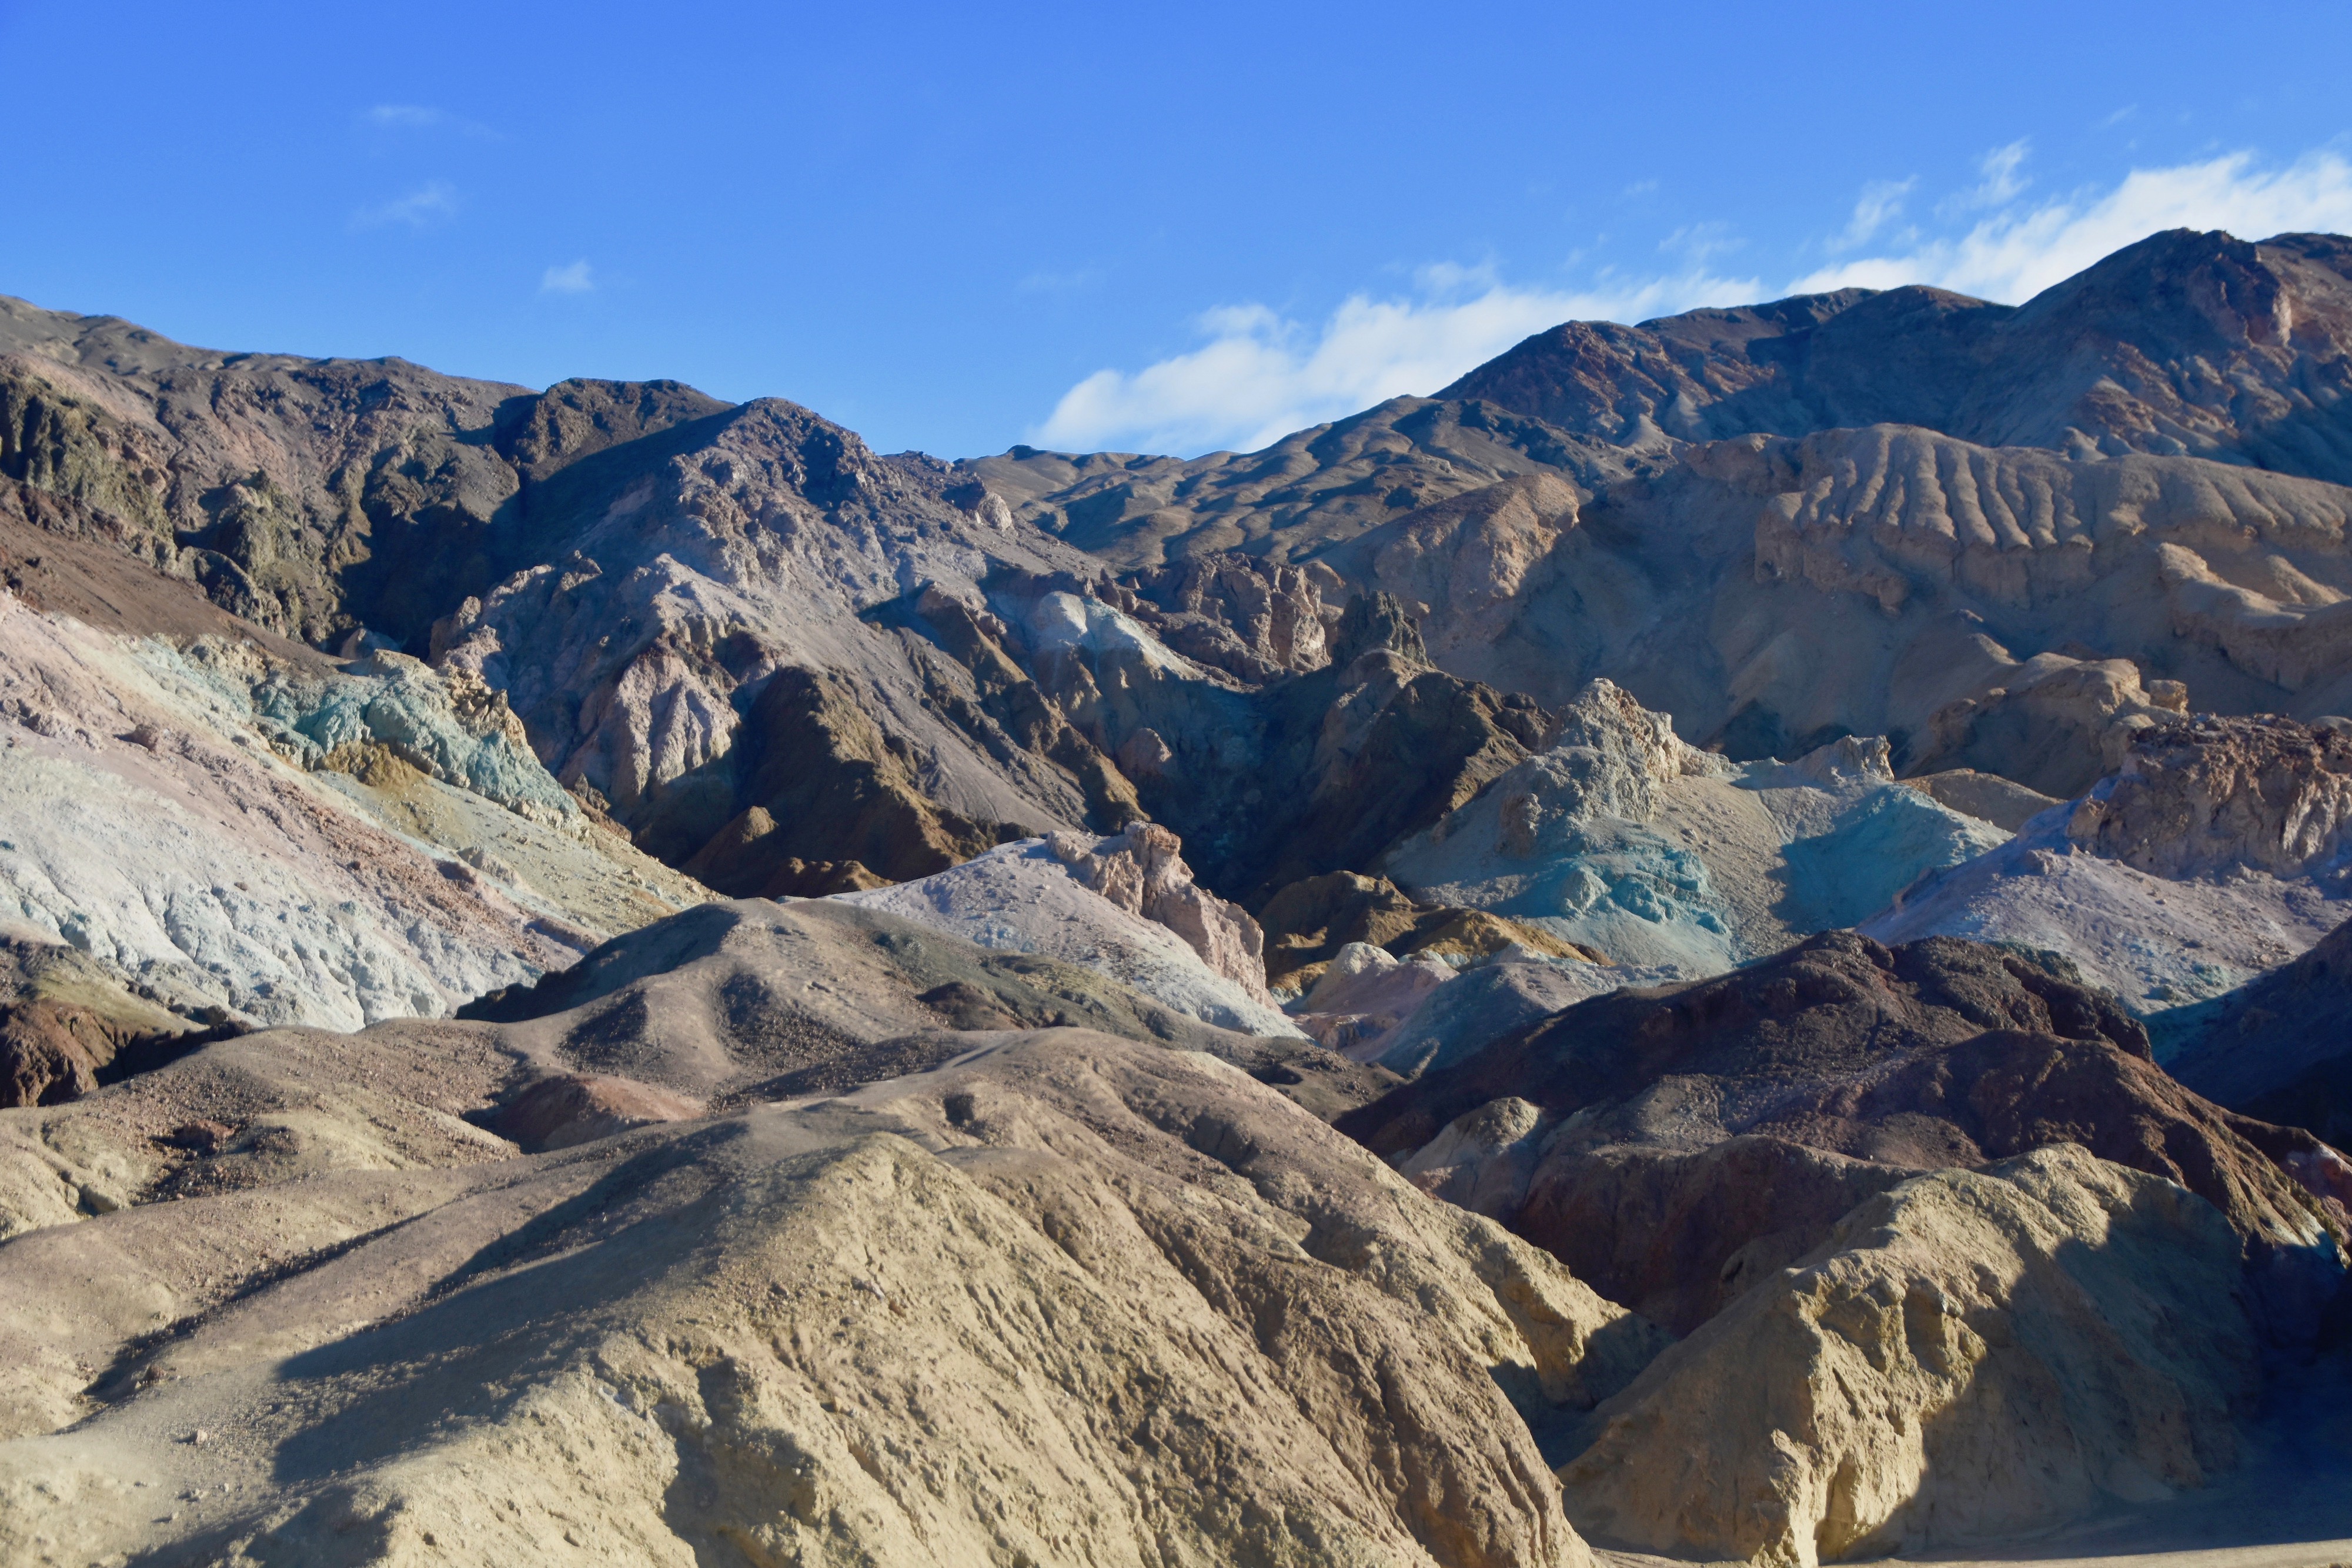 Artist's Palette, Death Valley